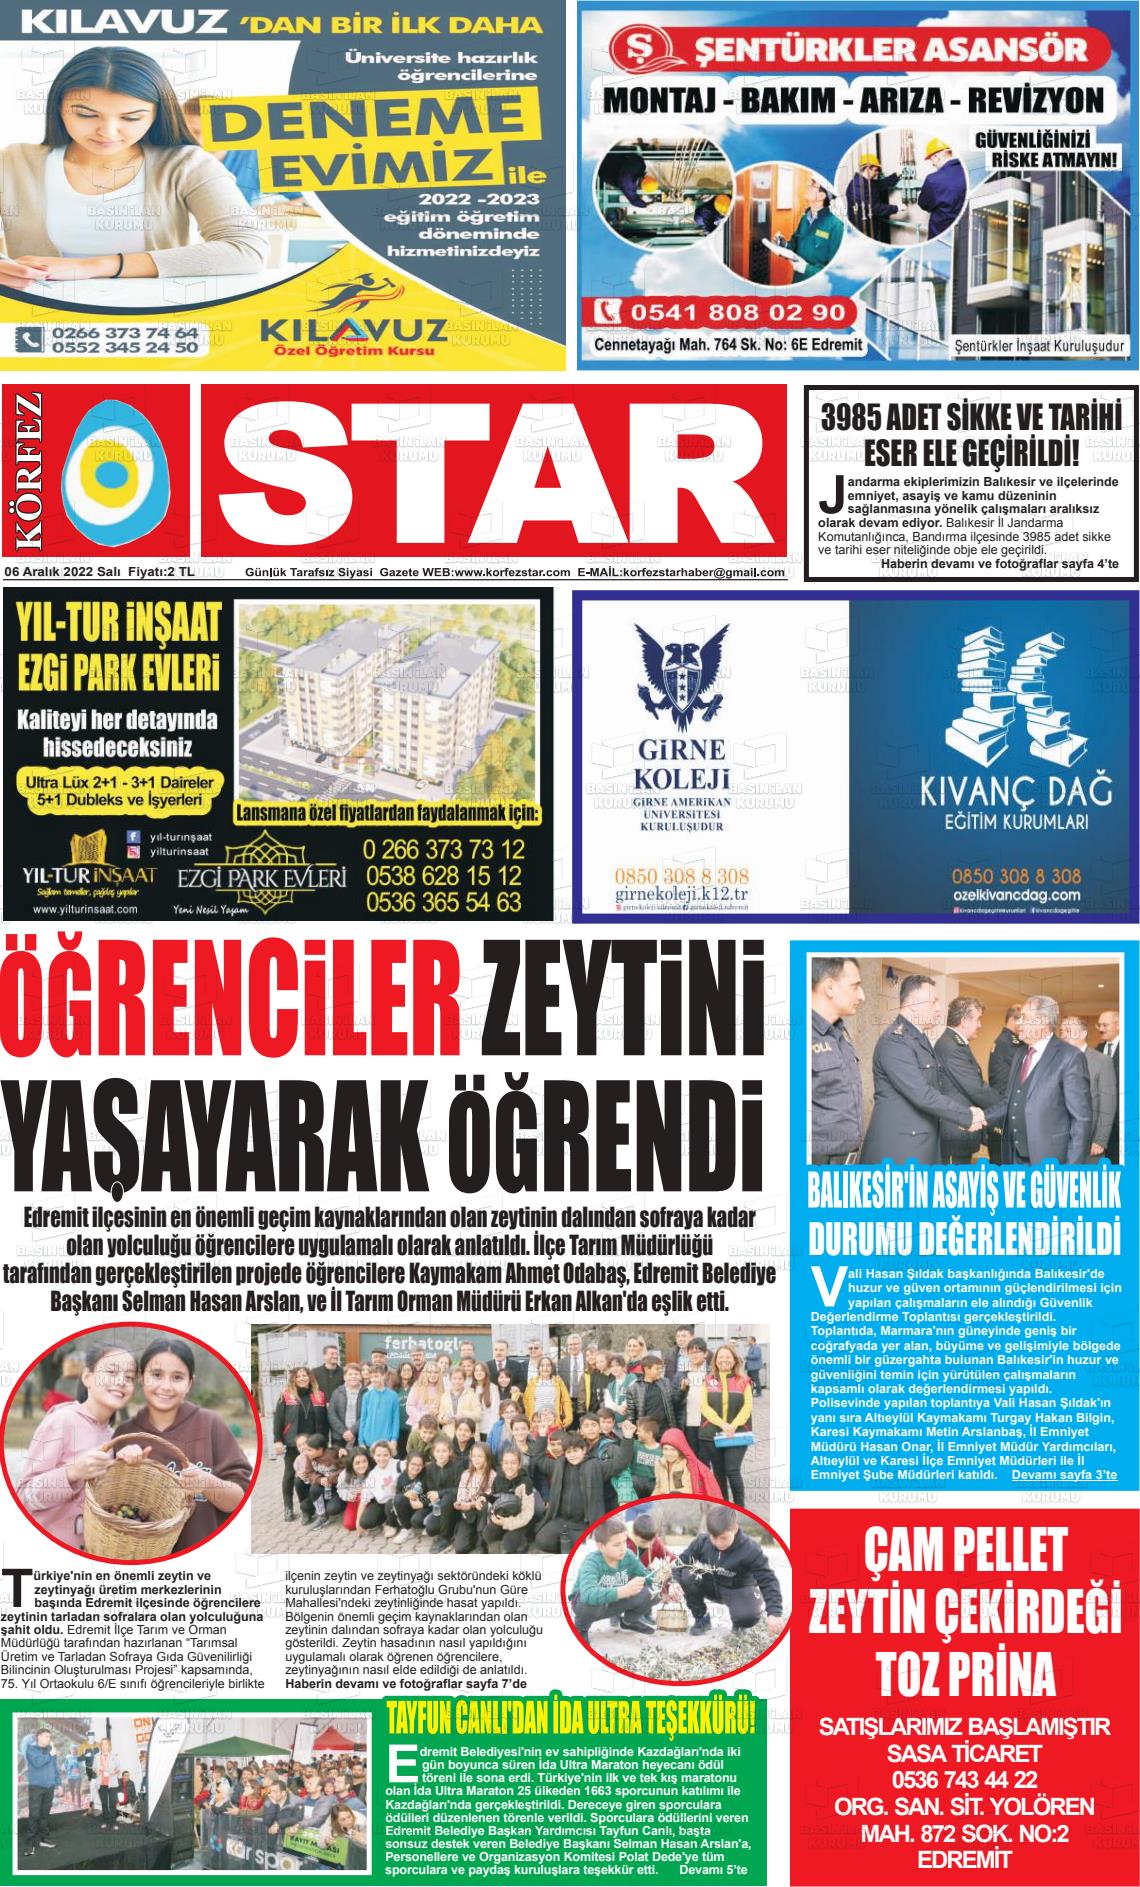 06 Aralık 2022 Körfez Star Gazete Manşeti